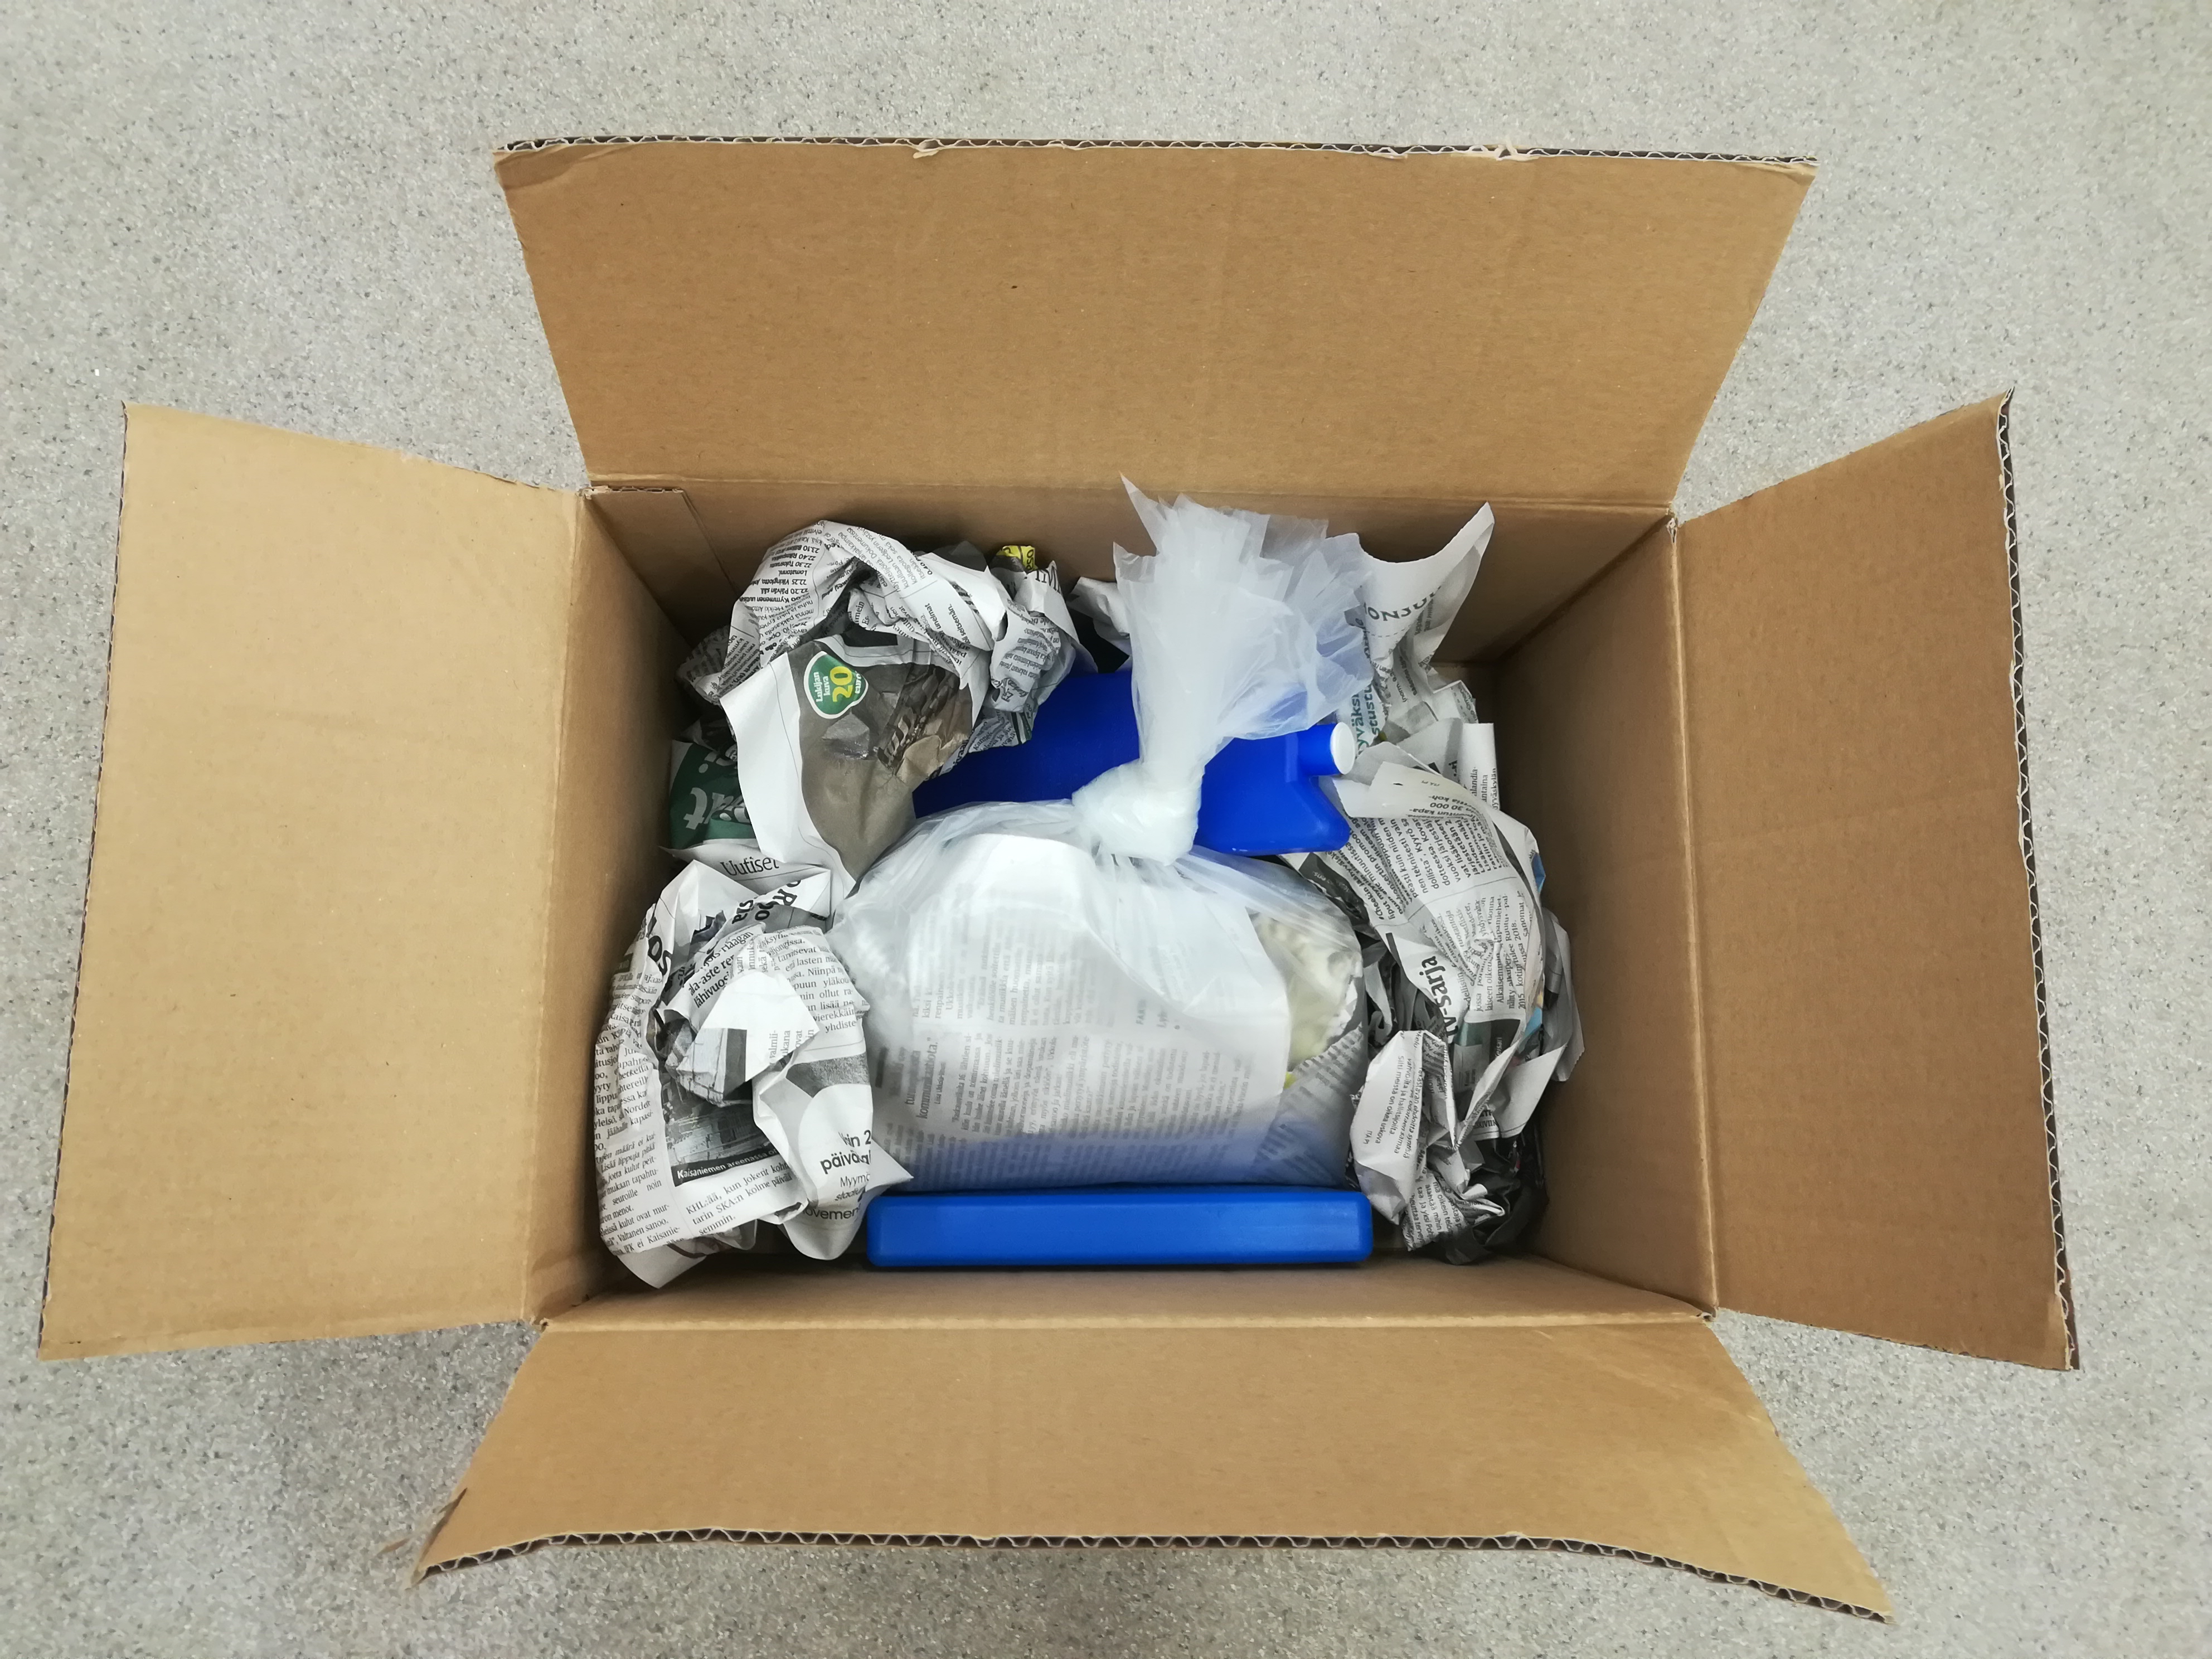 Packa slutligen provpåsen i en låda med tidningspapper och lägg med kylklampar. Skicka med remissen i en försluten plastpåse.